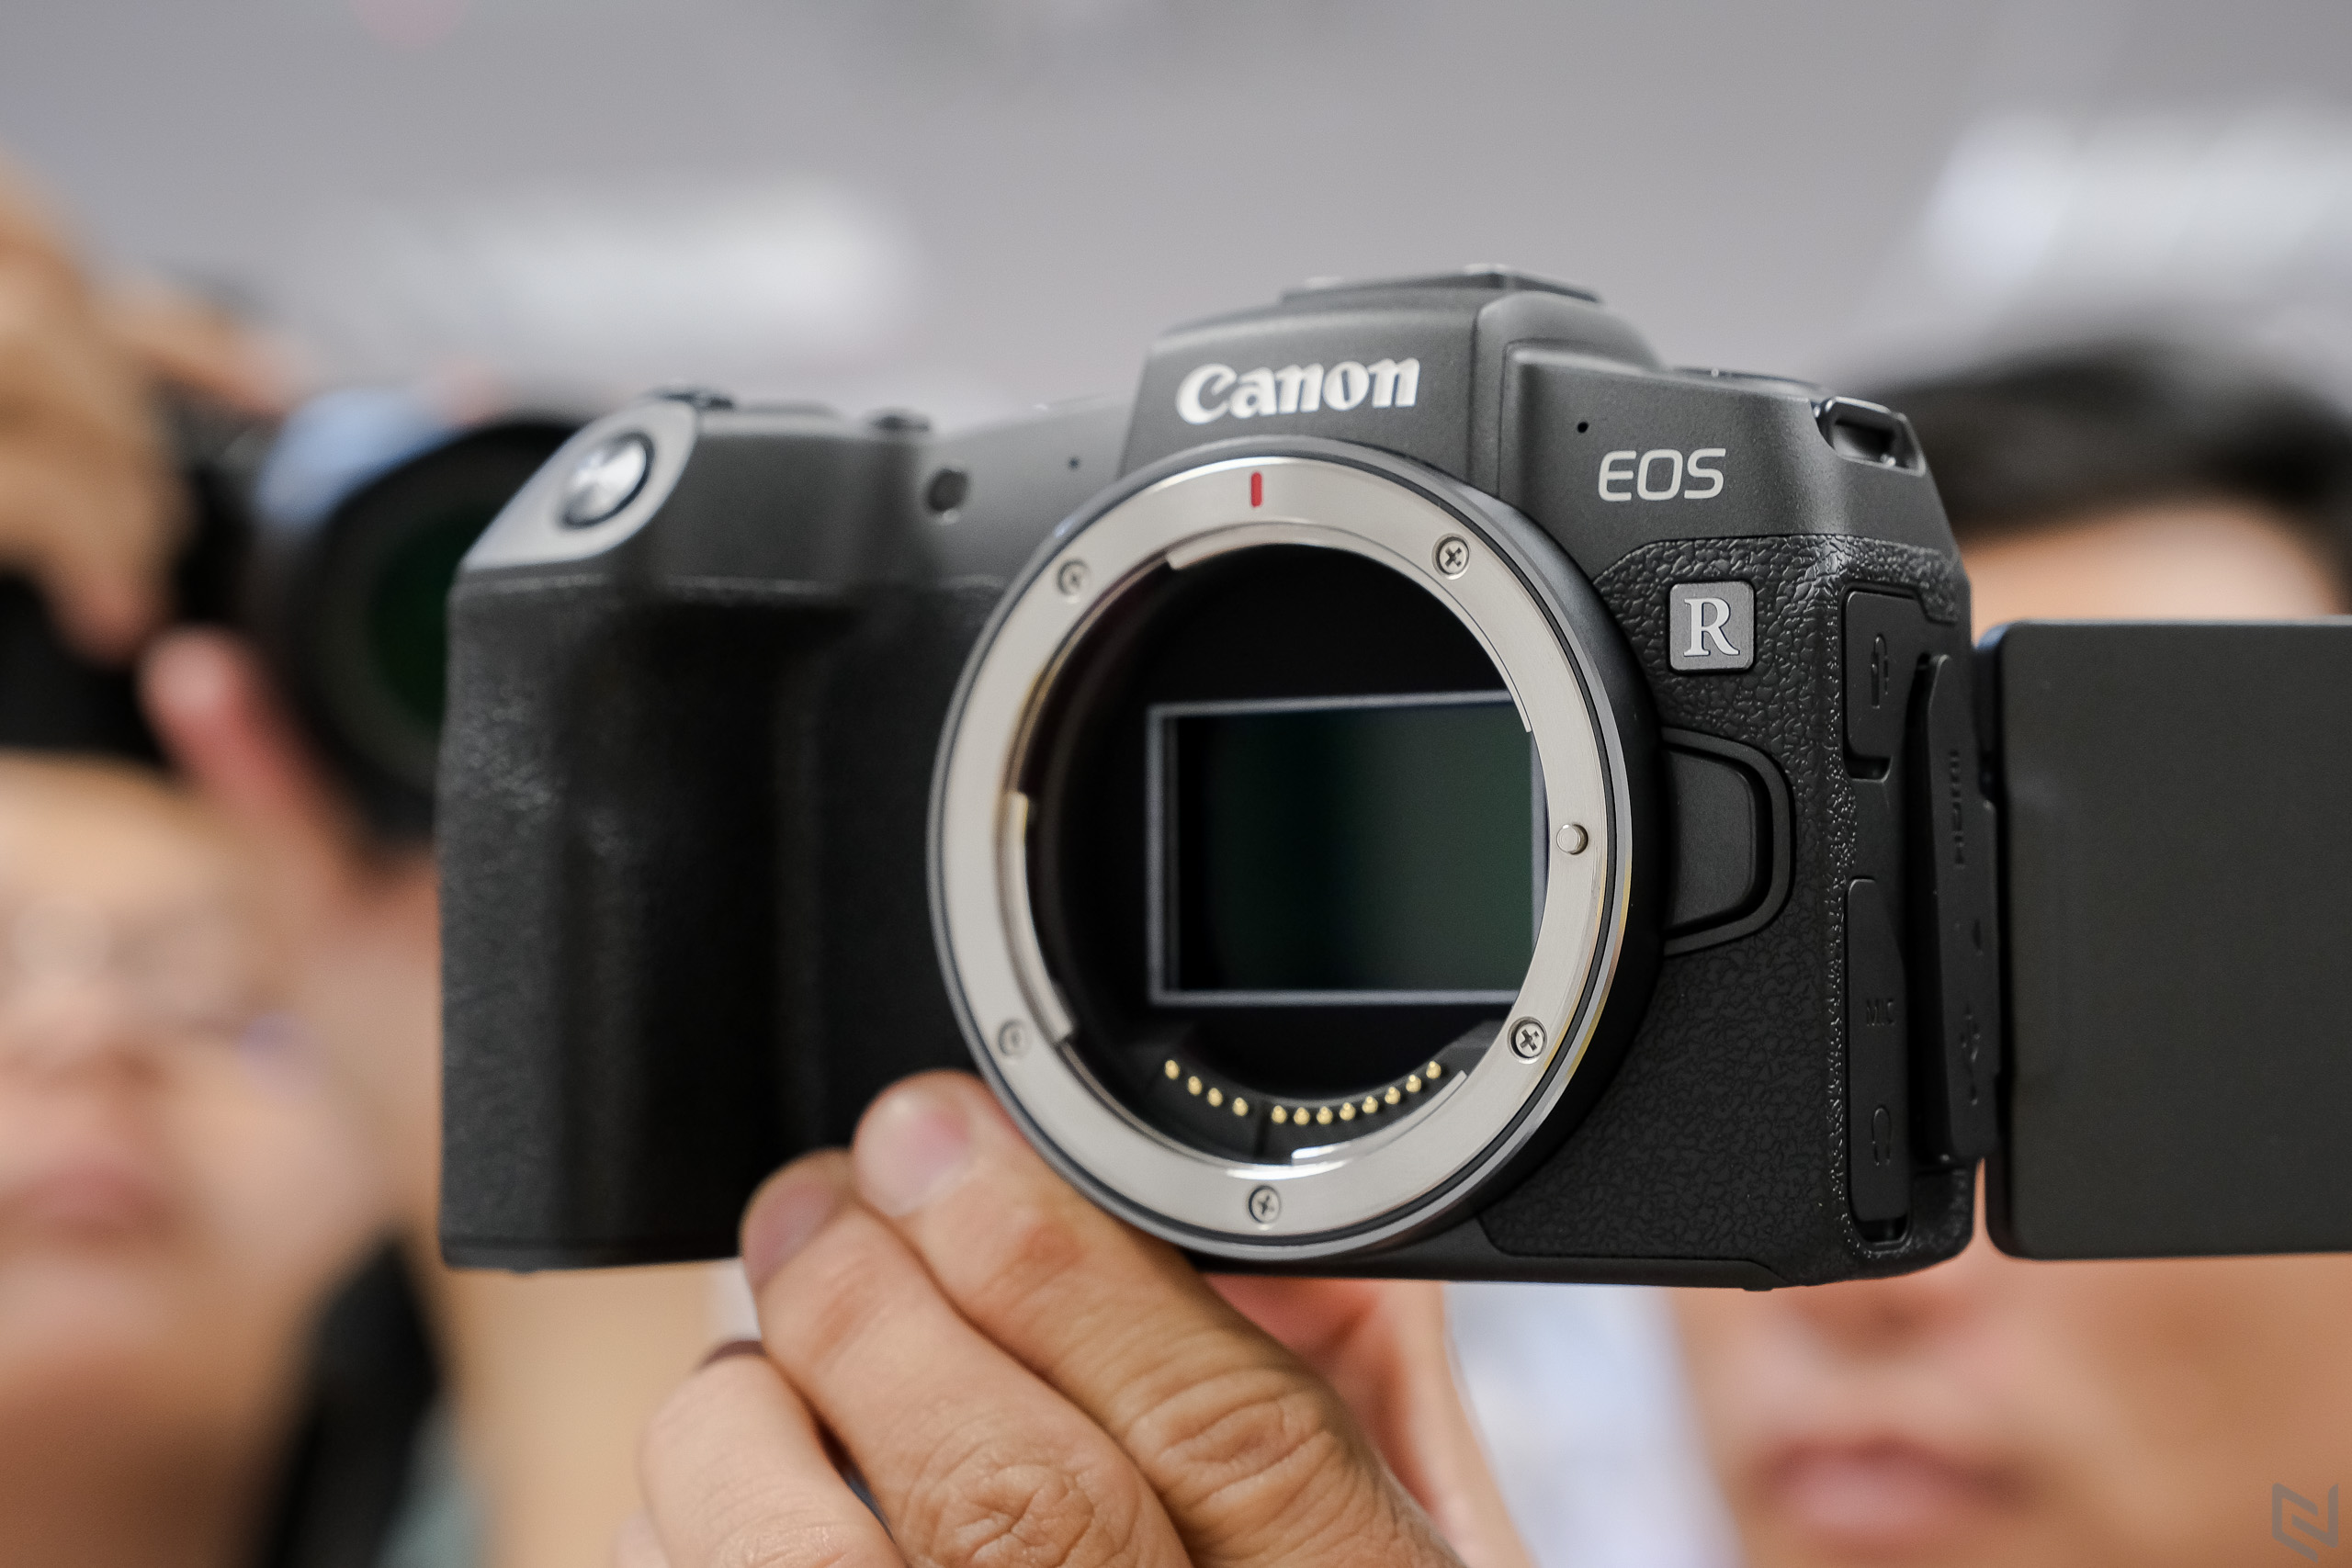 Canon đánh dấu năm thứ 17 liên tiếp dẫn đầu thị trường máy ảnh